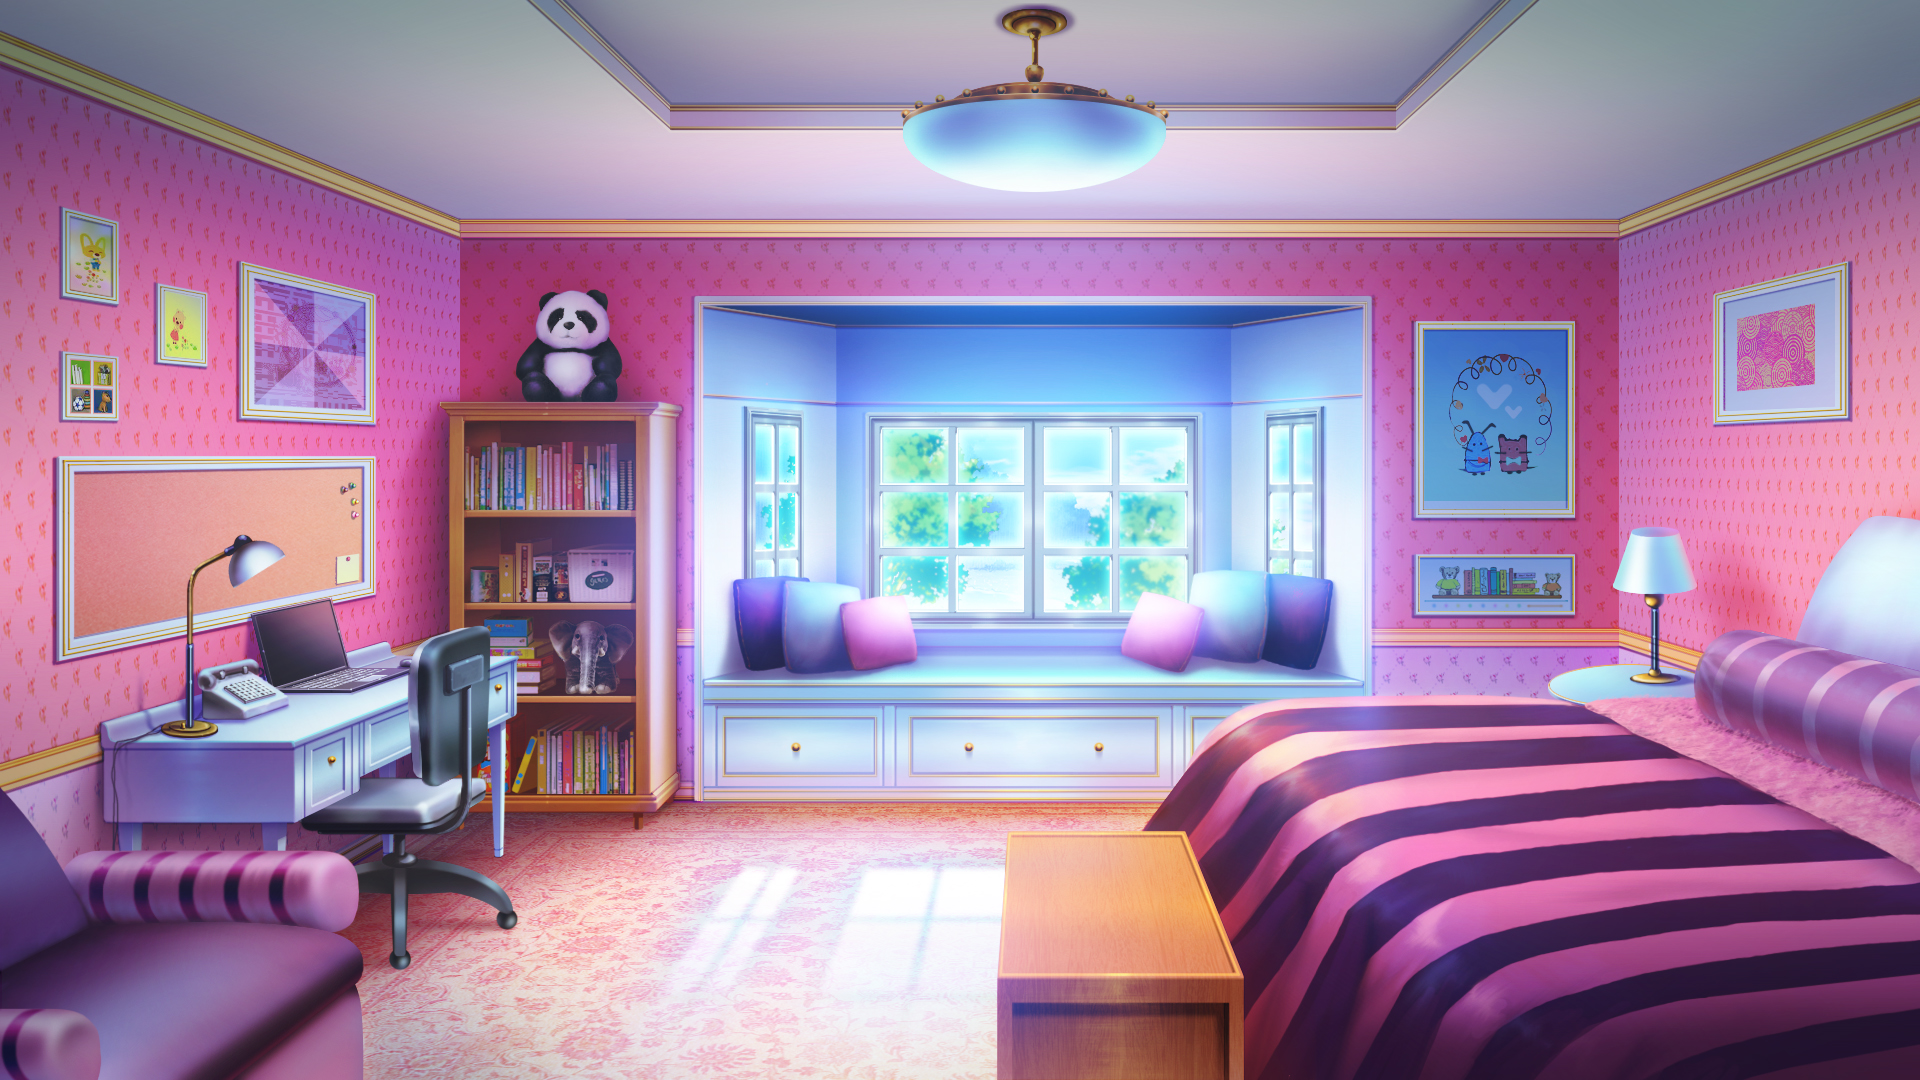 Bedroom Window Night Anime Bedroom Background Goimages